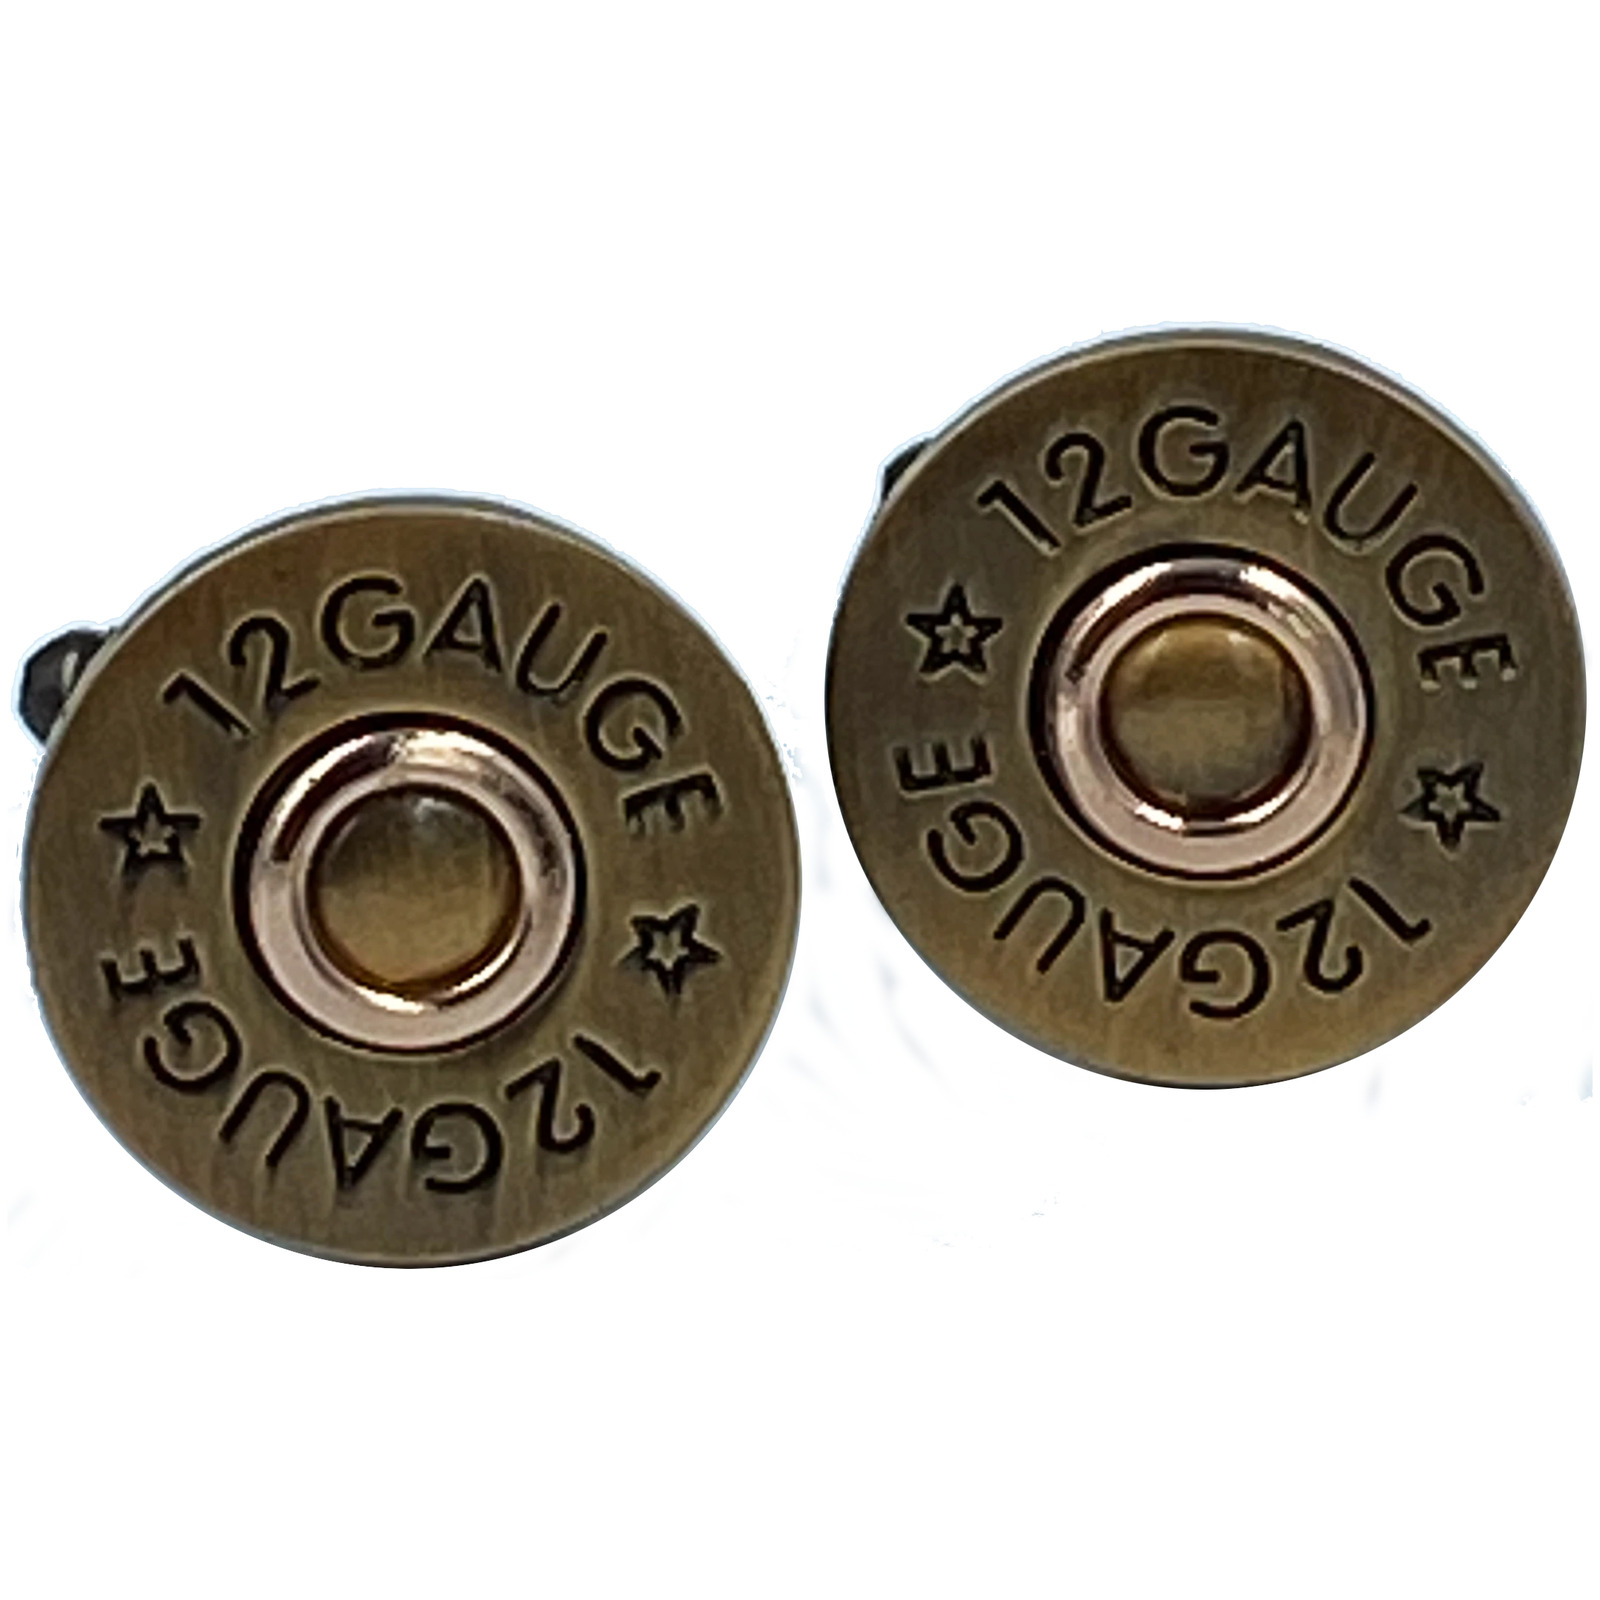 CL-016 12 Gauge Shotgun Shell Cufflinks